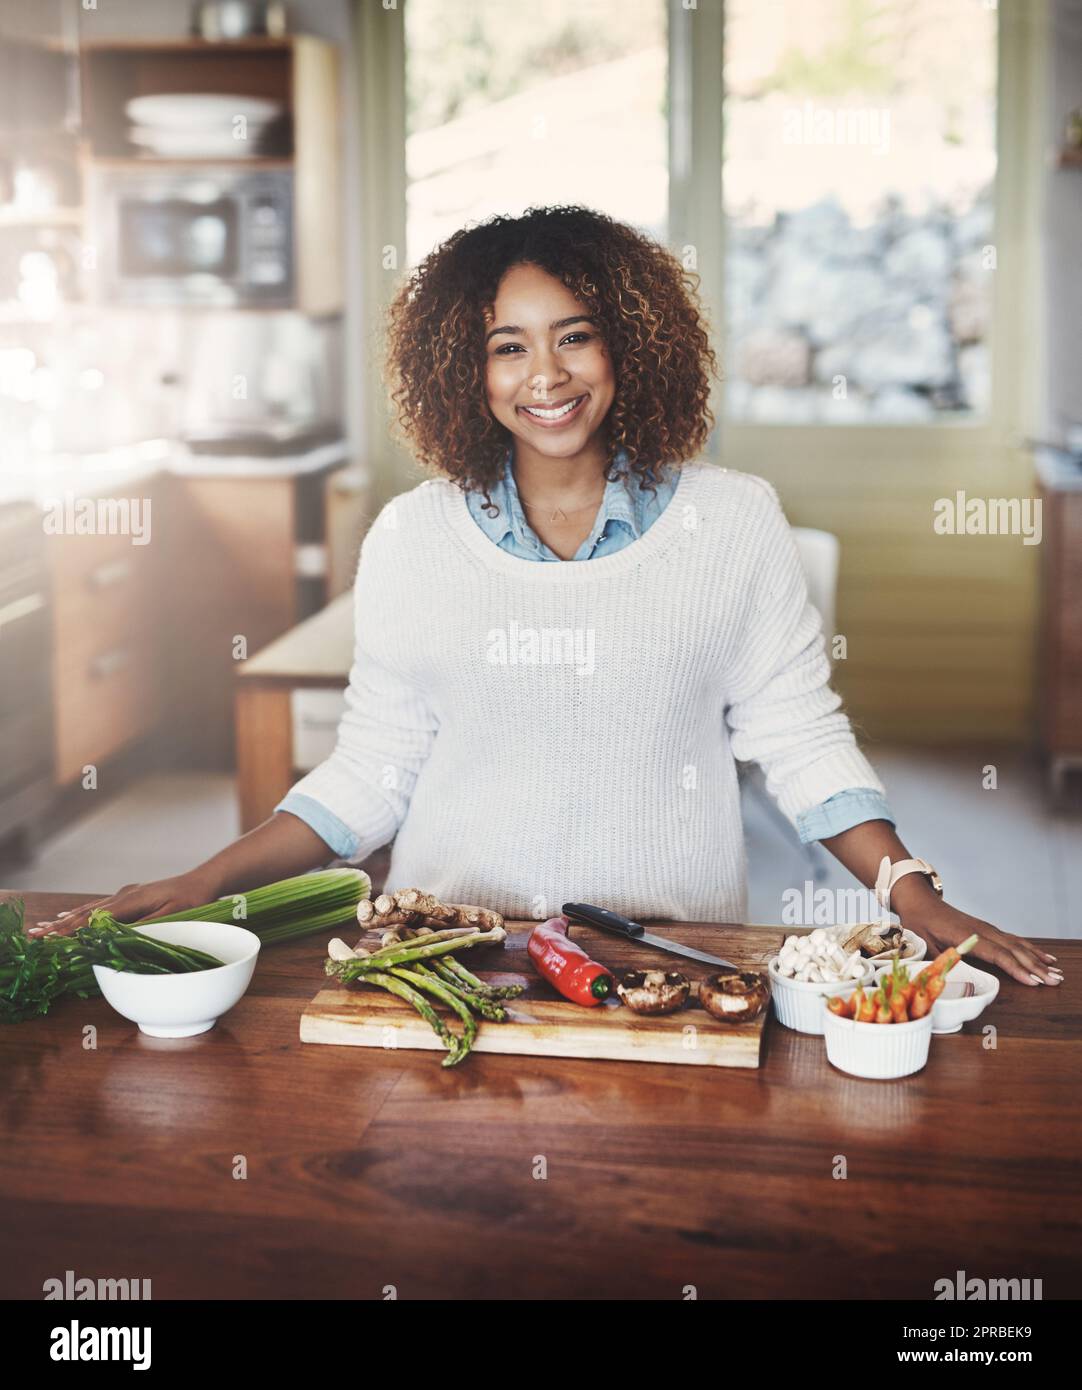 Ritratto di donna nera felice che prepara cibo sano in una cucina a casa. Giovane afro-americano che utilizza verdure fresche per preparare un delizioso pasto bilanciato a basso contenuto di carboidrati. Signora con una dieta purificante e disintossicante Foto Stock